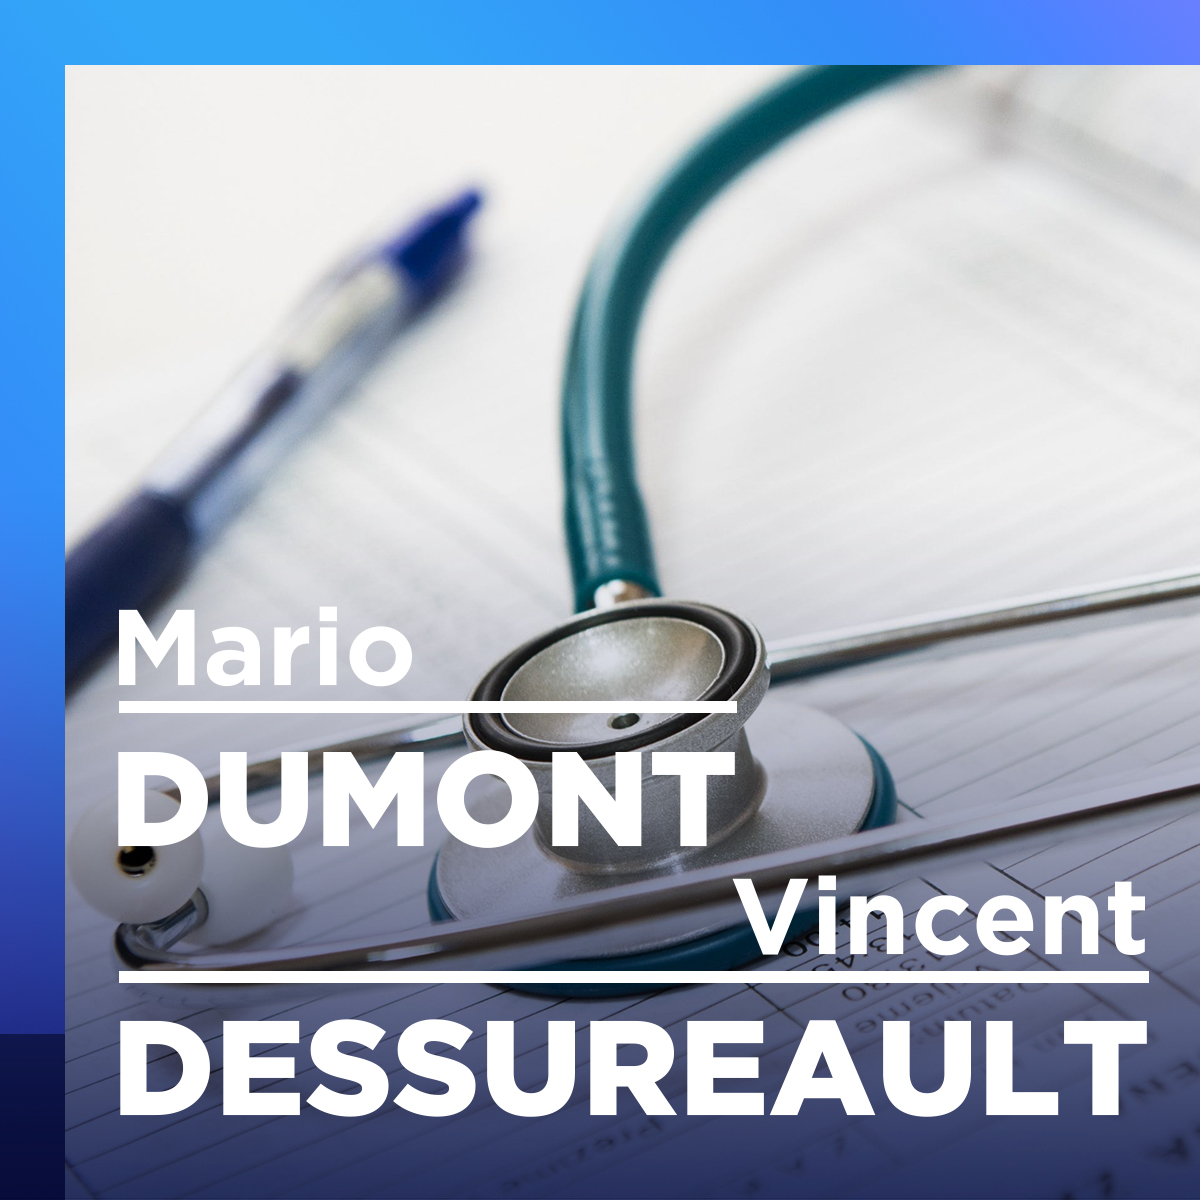 Santé : ce qui compte c’est que les patients puissent voir un médecin, pense Mario Dumont